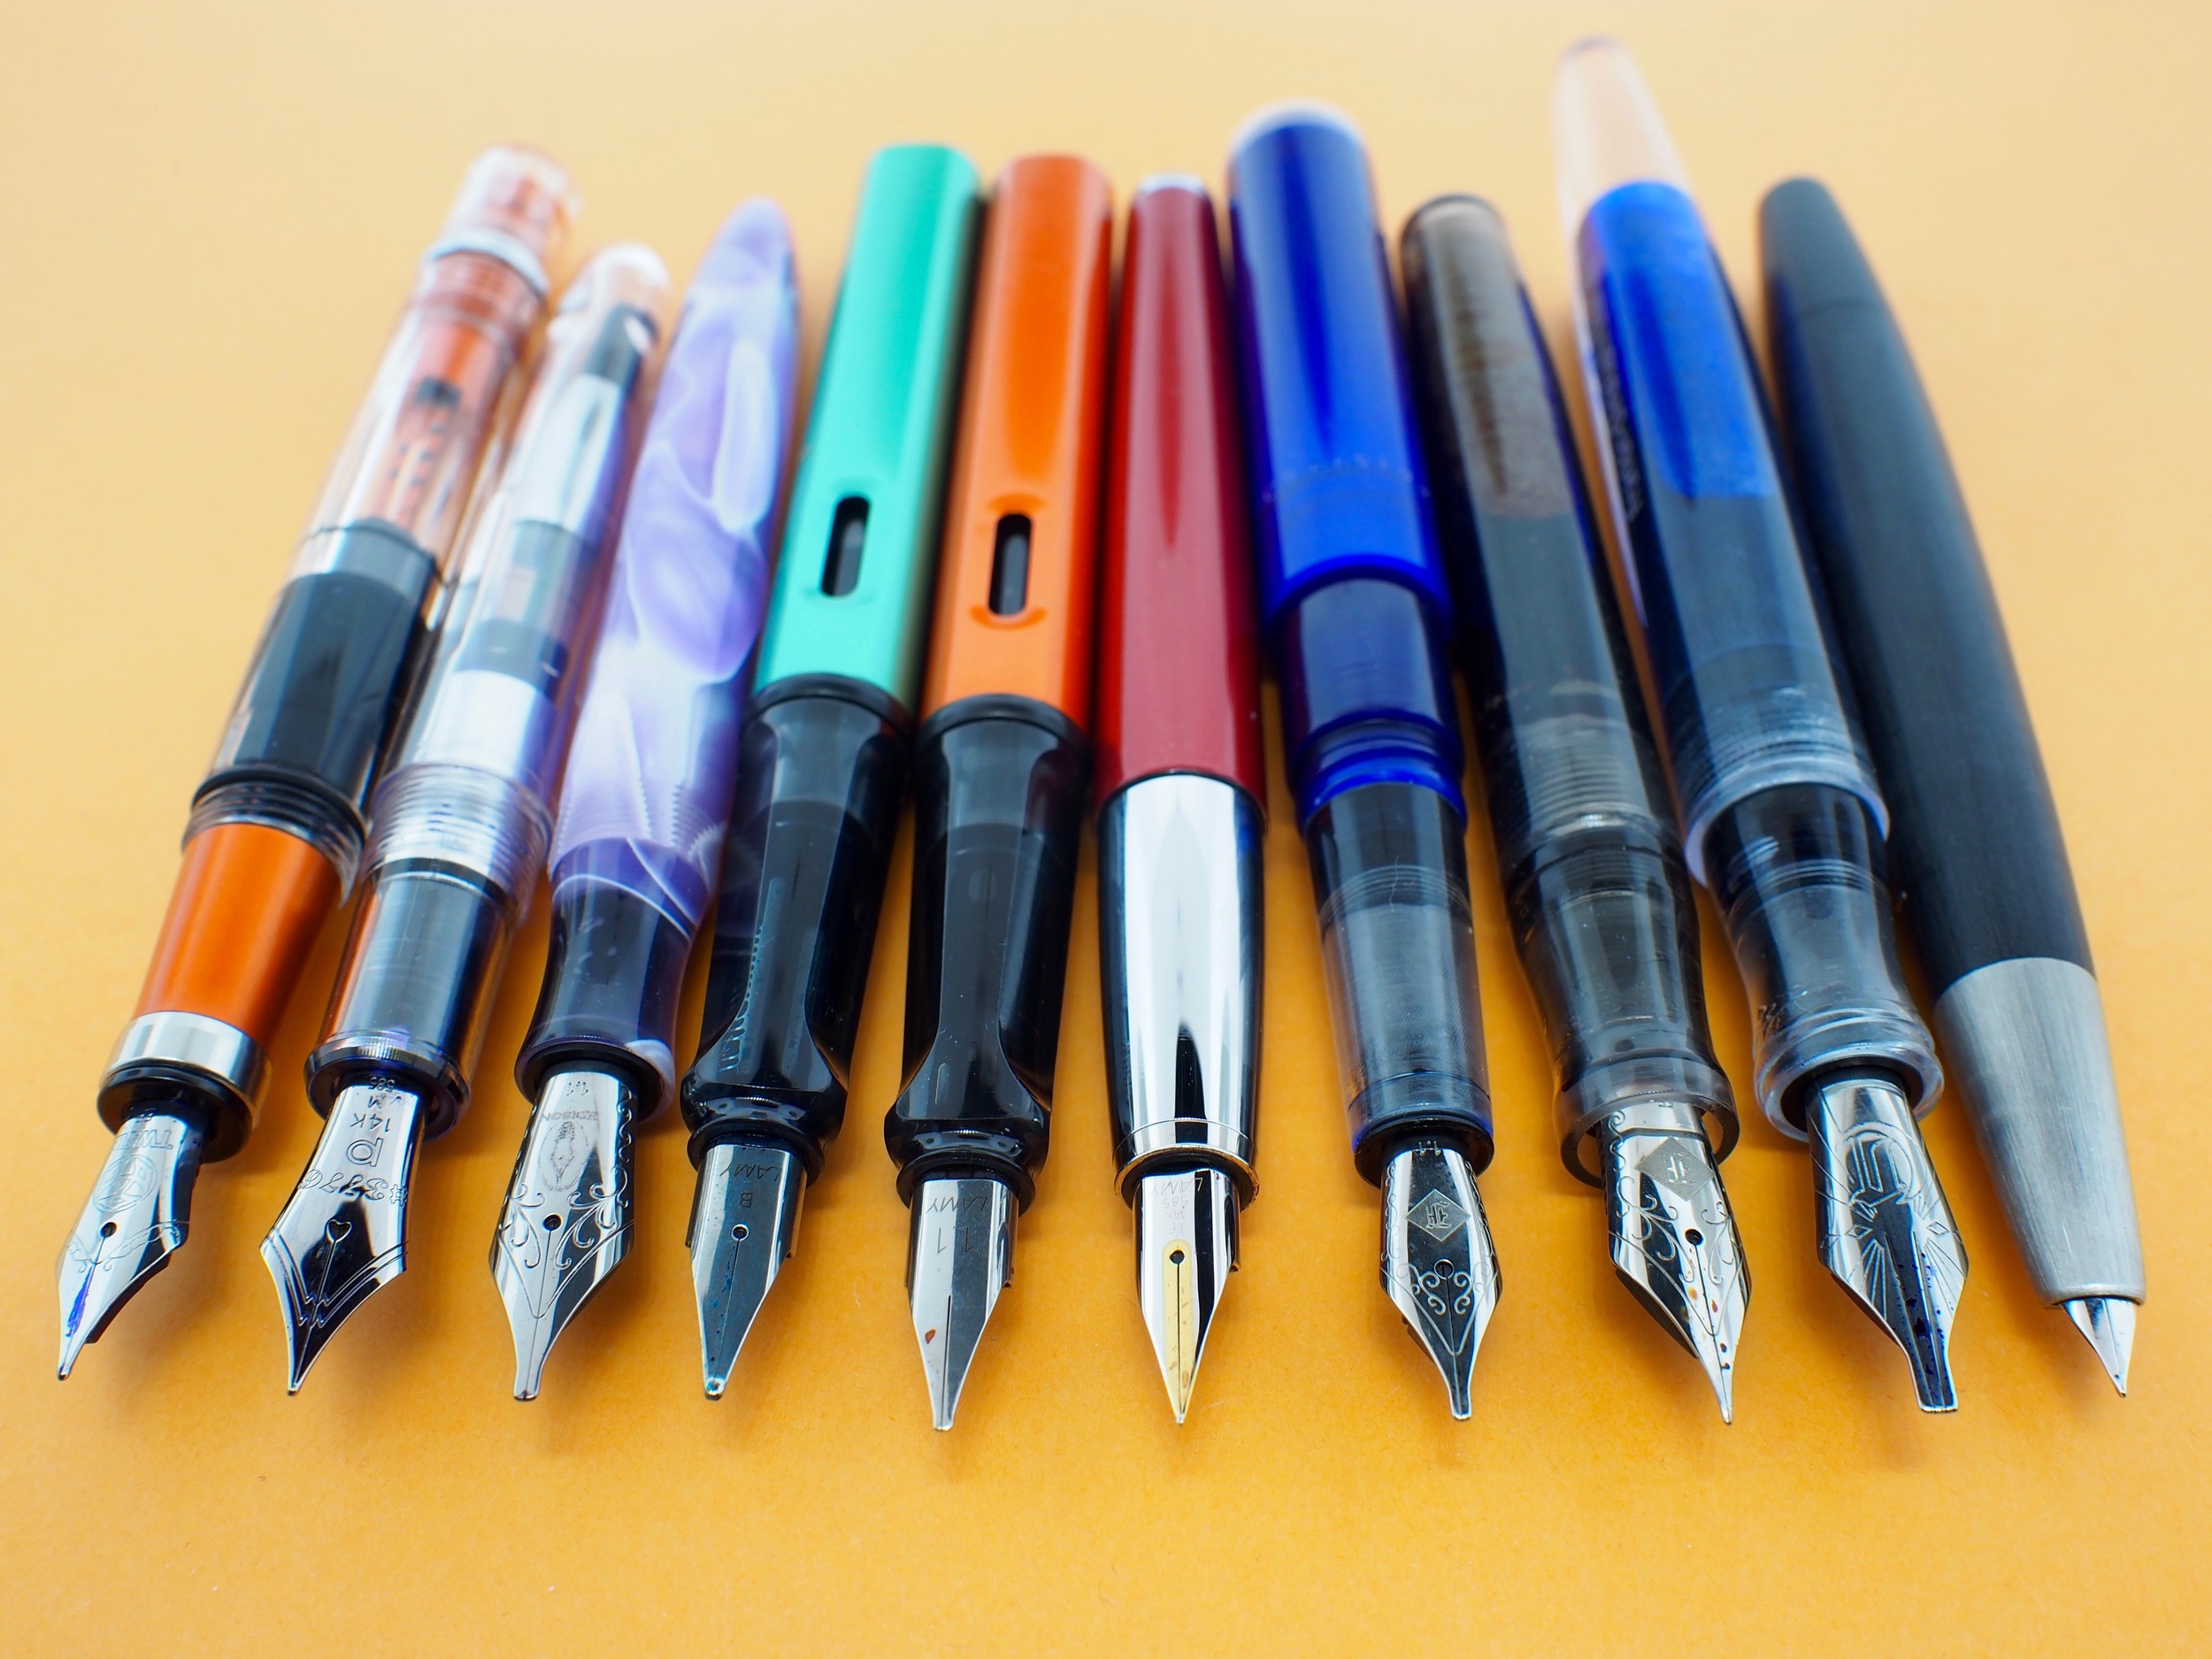 Inked Pen Line-Up